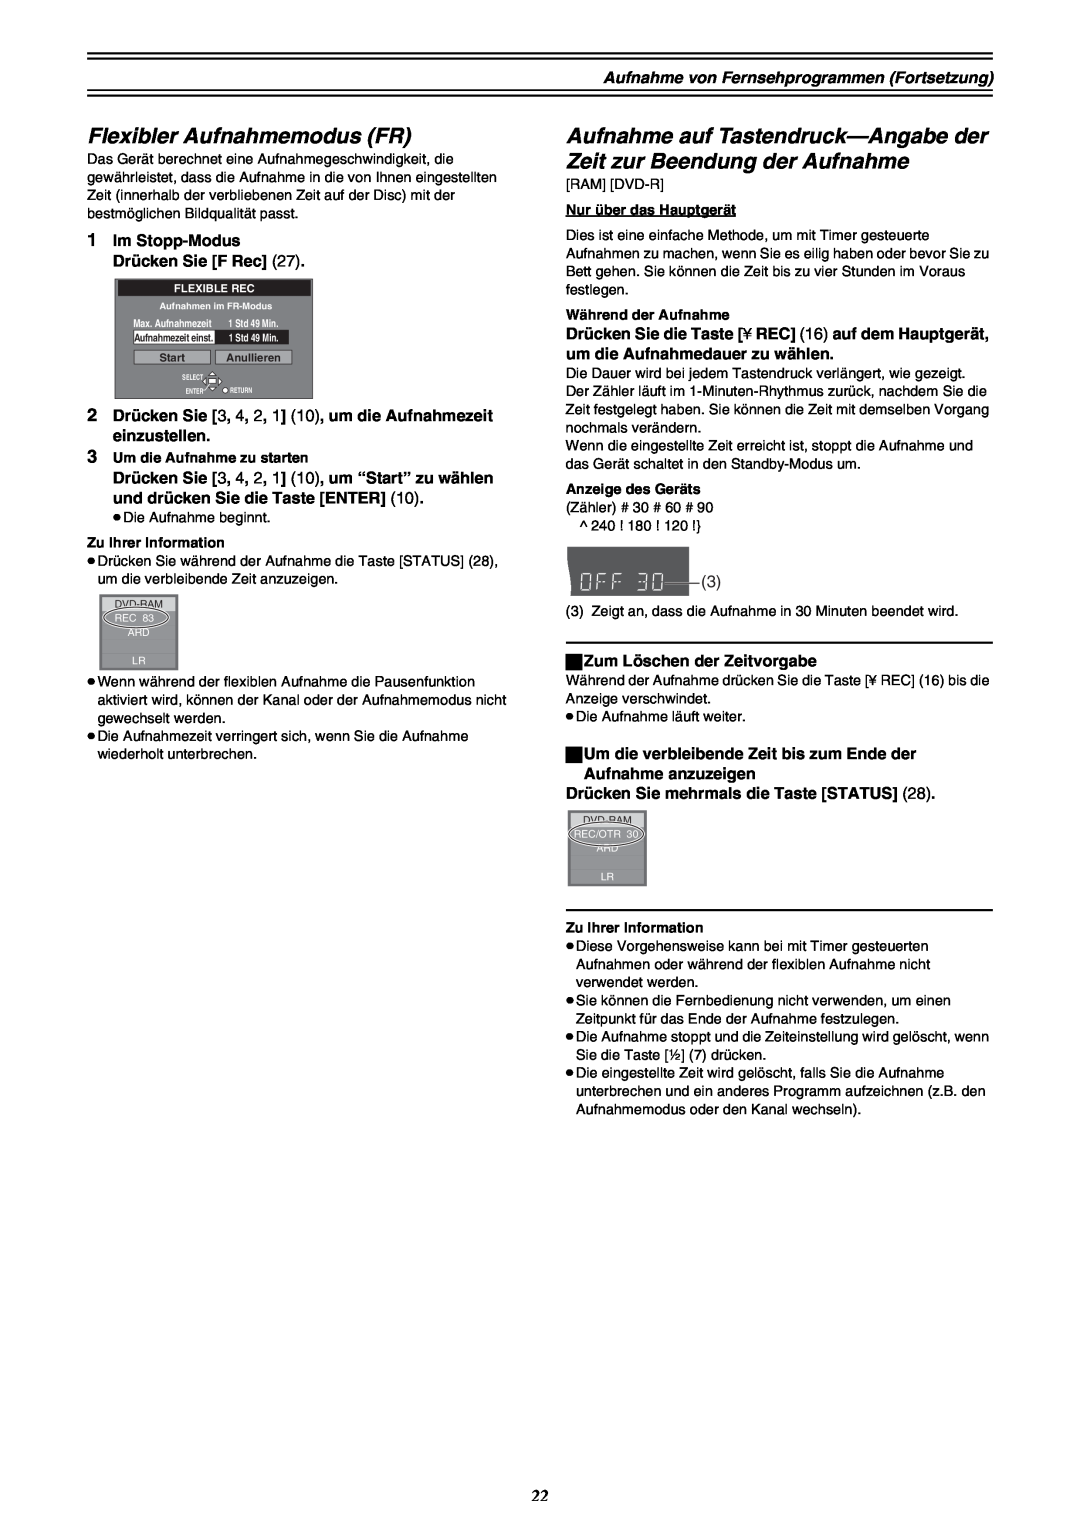 Panasonic DMR-E30 manual Flexibler Aufnahmemodus FR, Aufnahme auf Tastendruck-Angabe der Zeit zur Beendung der Aufnahme 